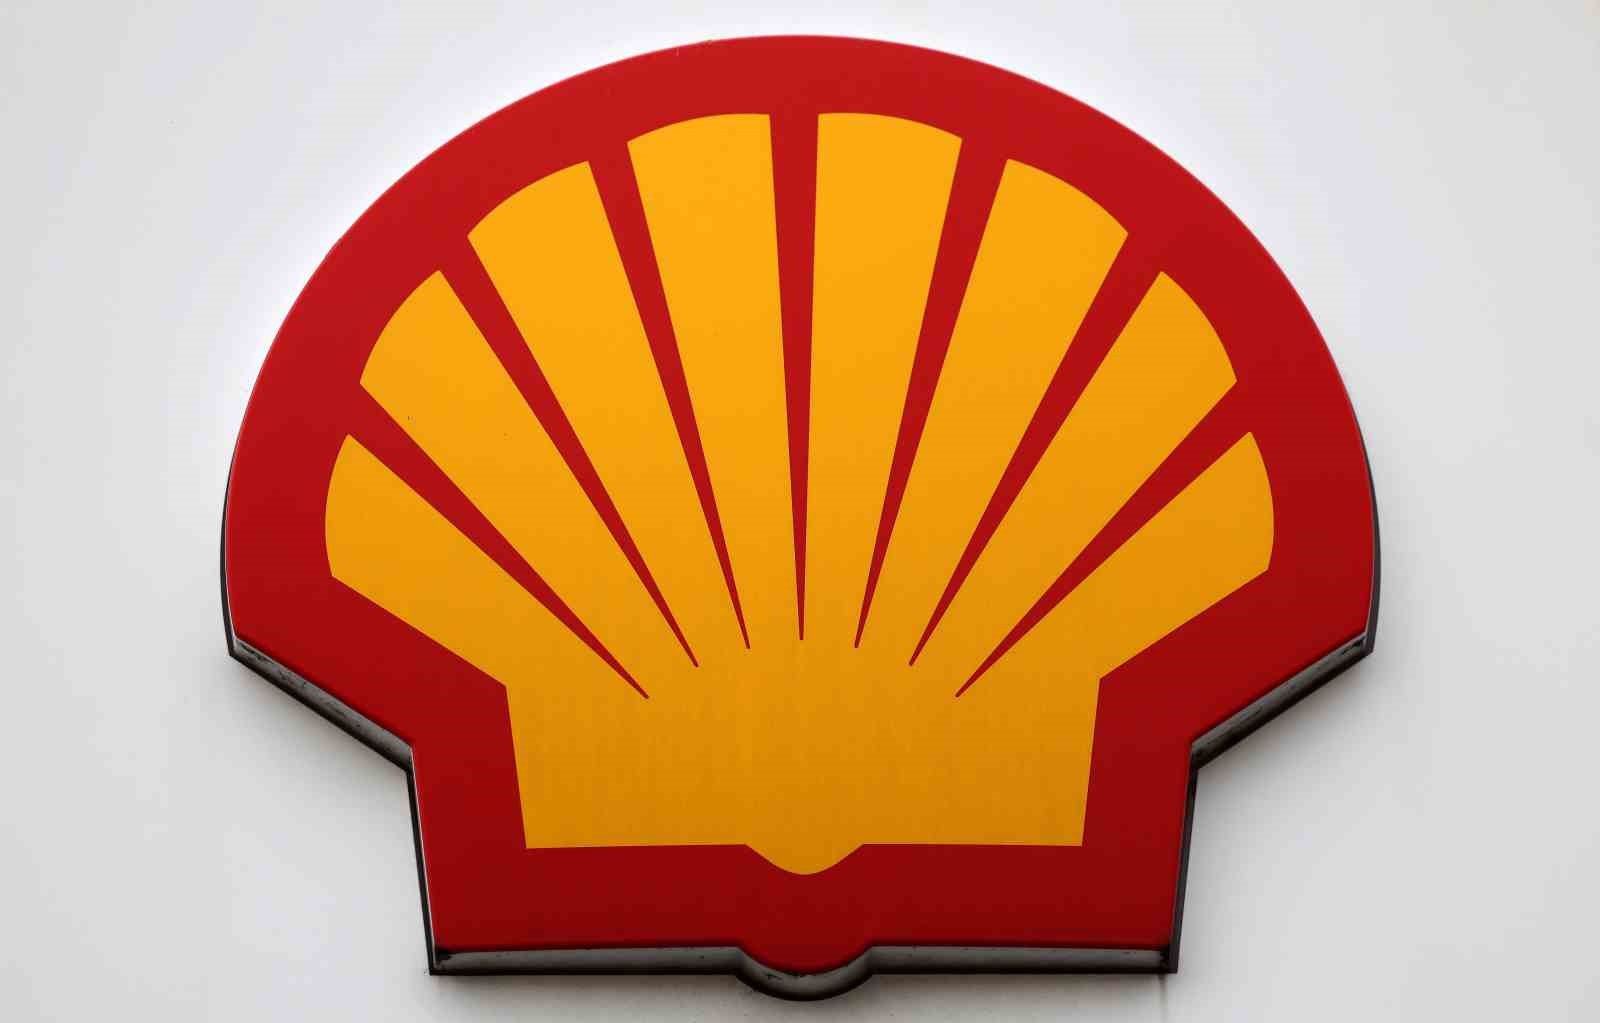 Shell Şirketi, Kızıldeniz üzerinden gerçekleştirilen sevkiyatları geçici bir süre askıya aldı.